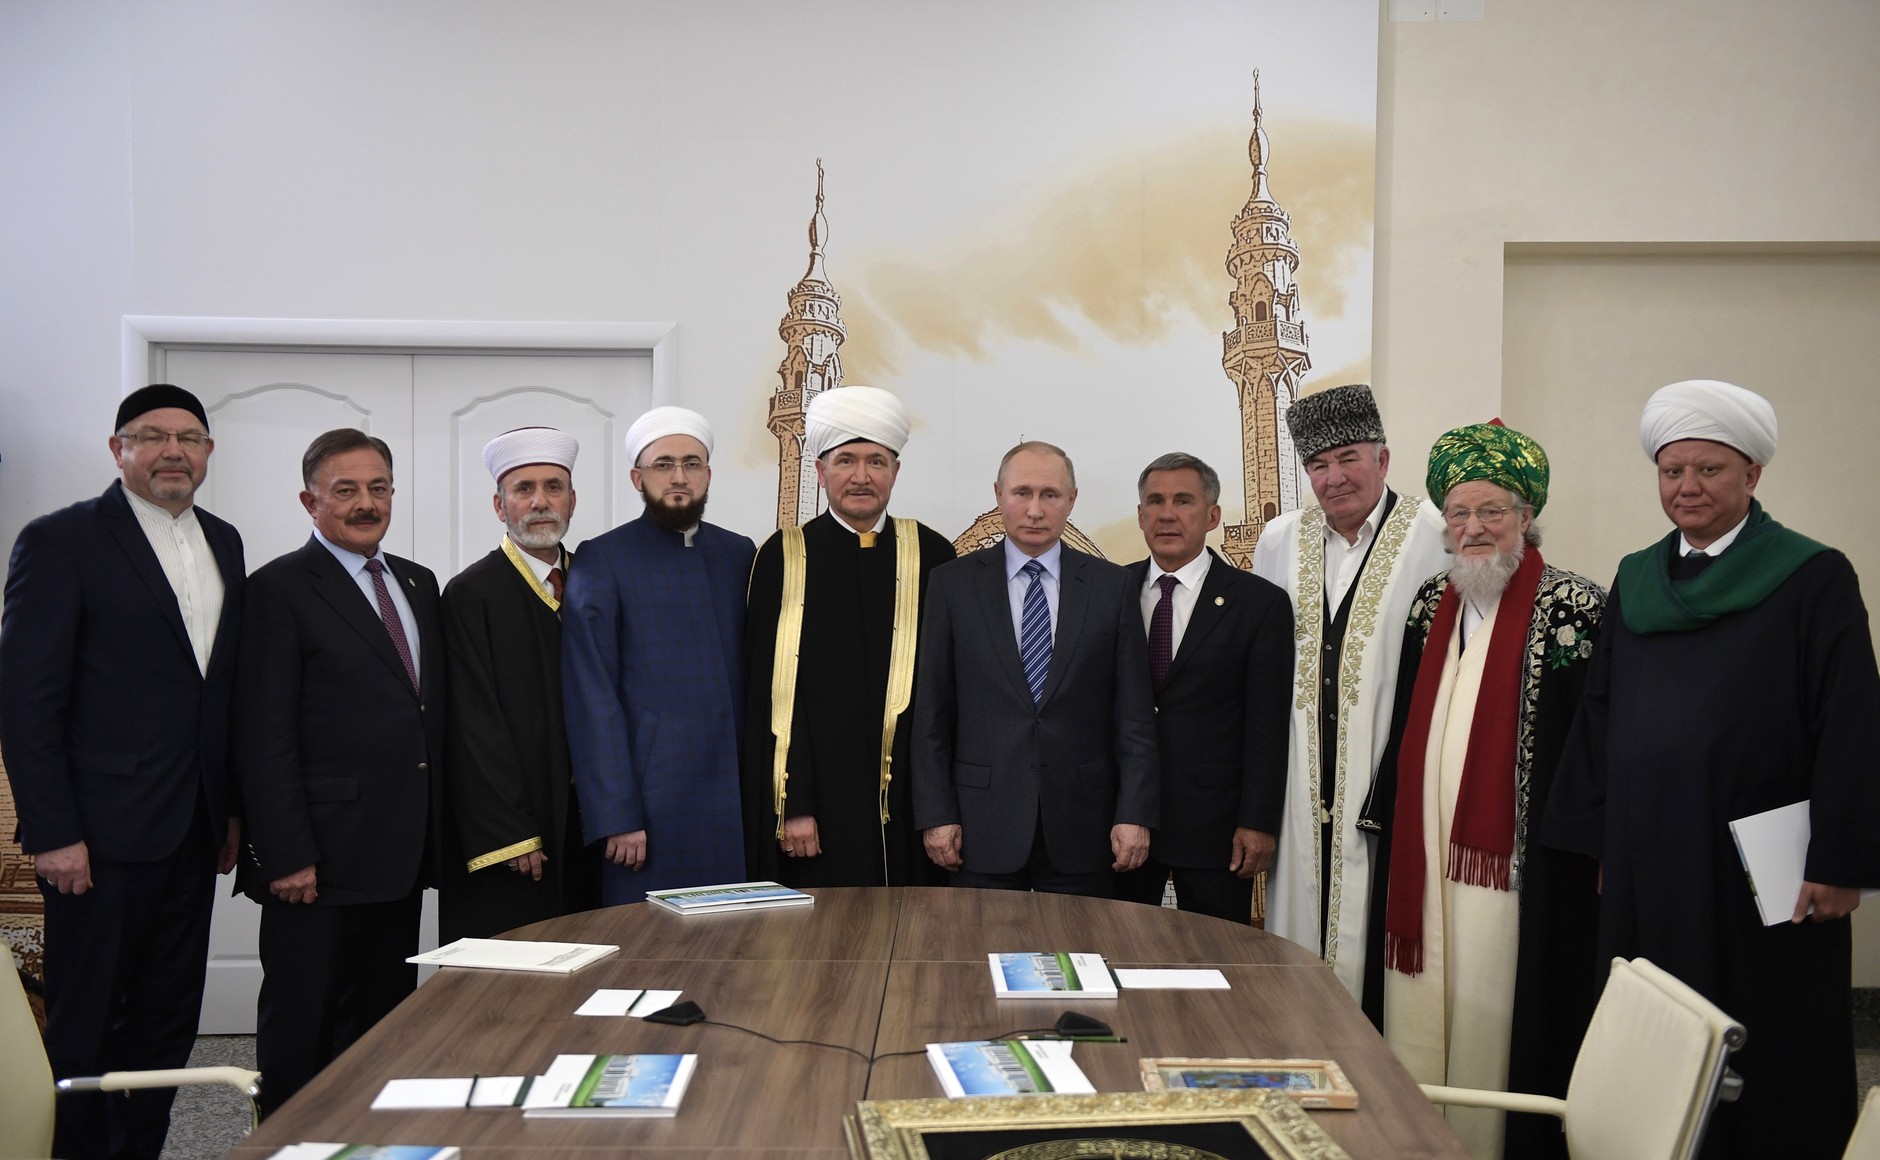 Встреча Президента России Владимира Путина с муфтиями централизованных религиозных организаций мусульман